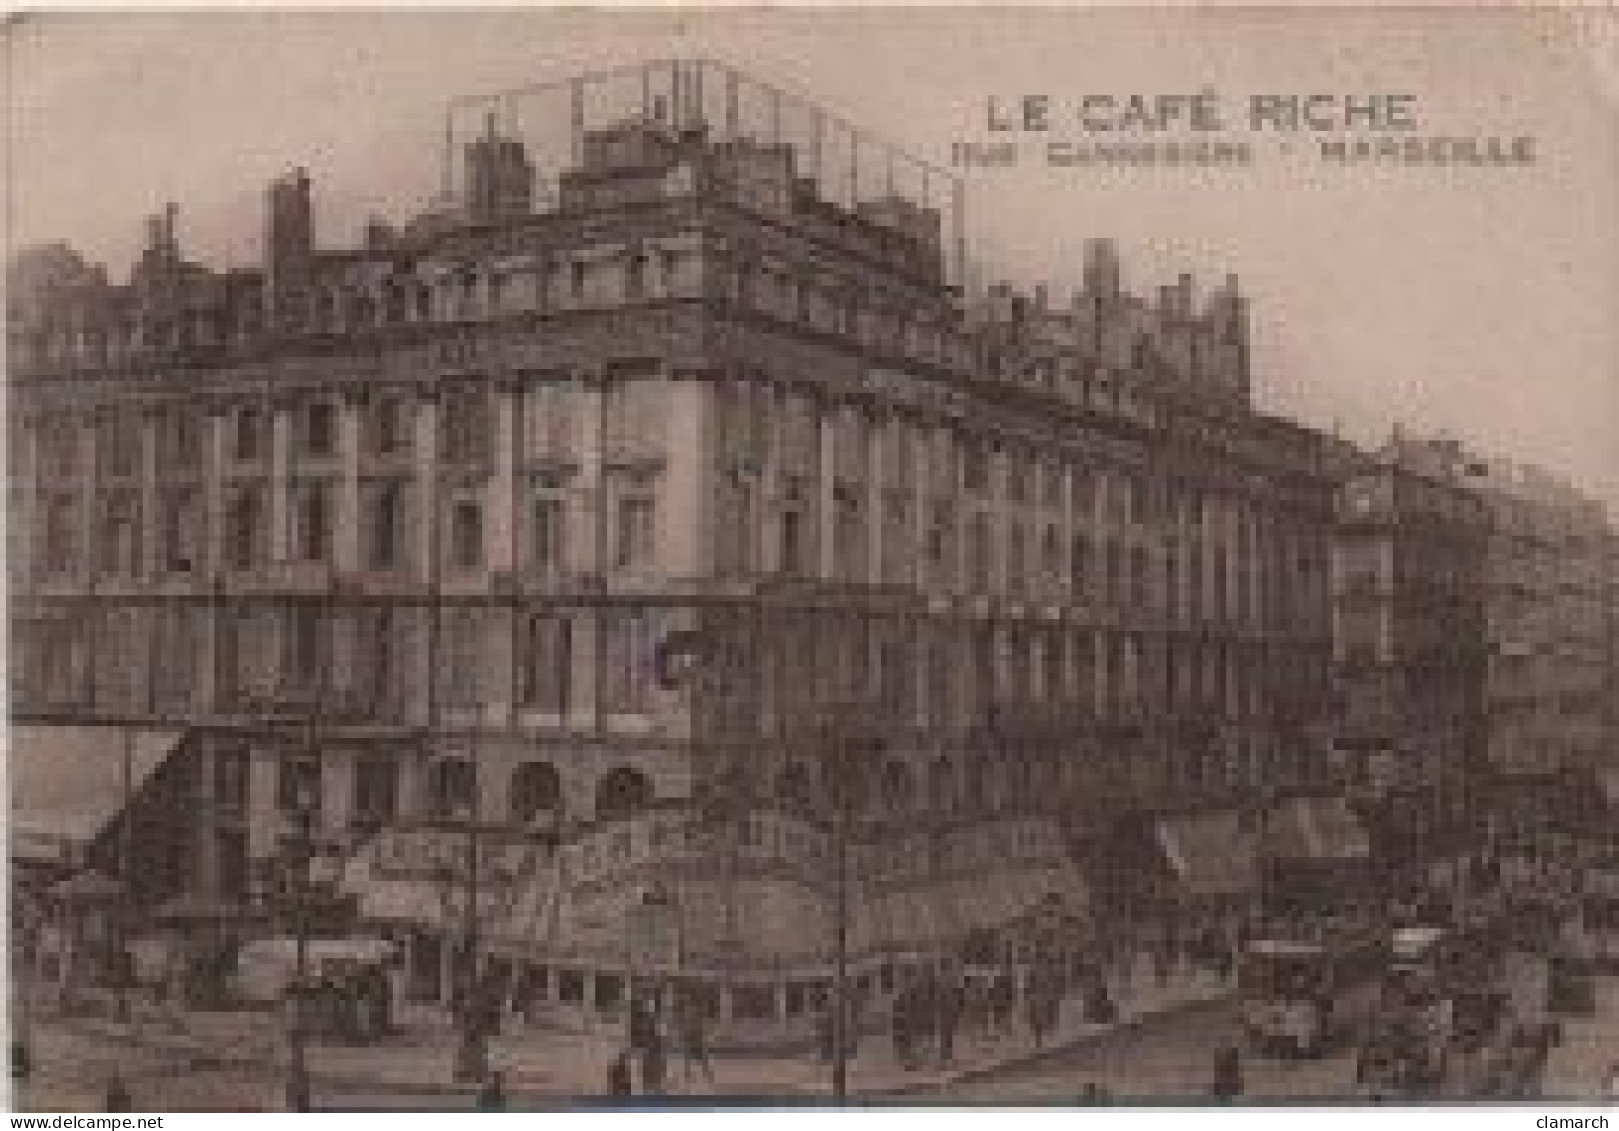 BOUCHE DU RHONE-Marseille Le Café Riche, Rue Cannebière - Canebière, Centre Ville